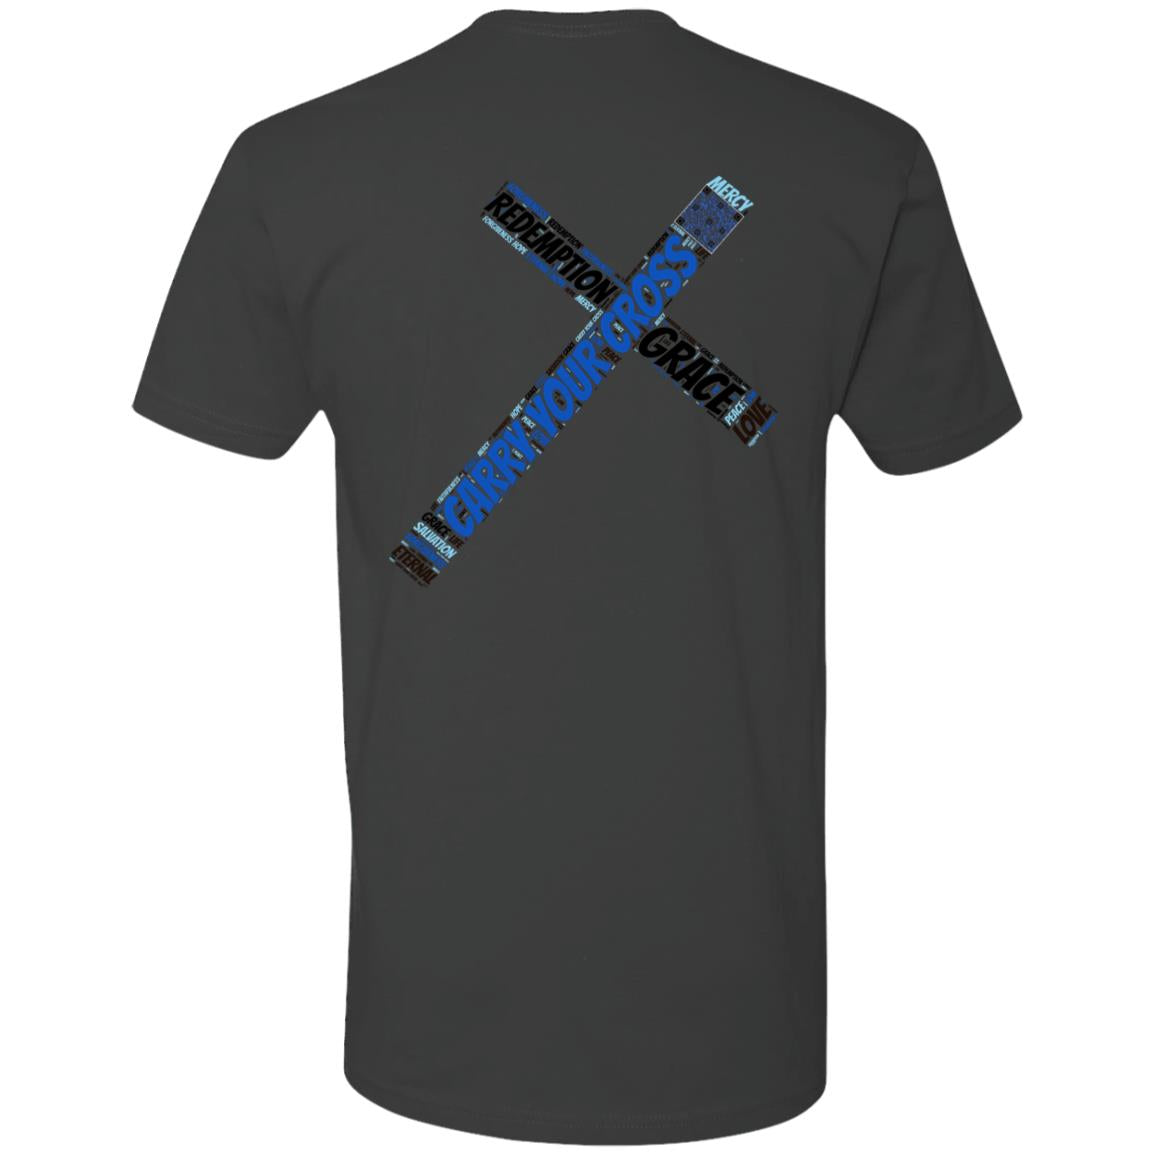 Cross of Redemption Short Sleeve T-Shirt